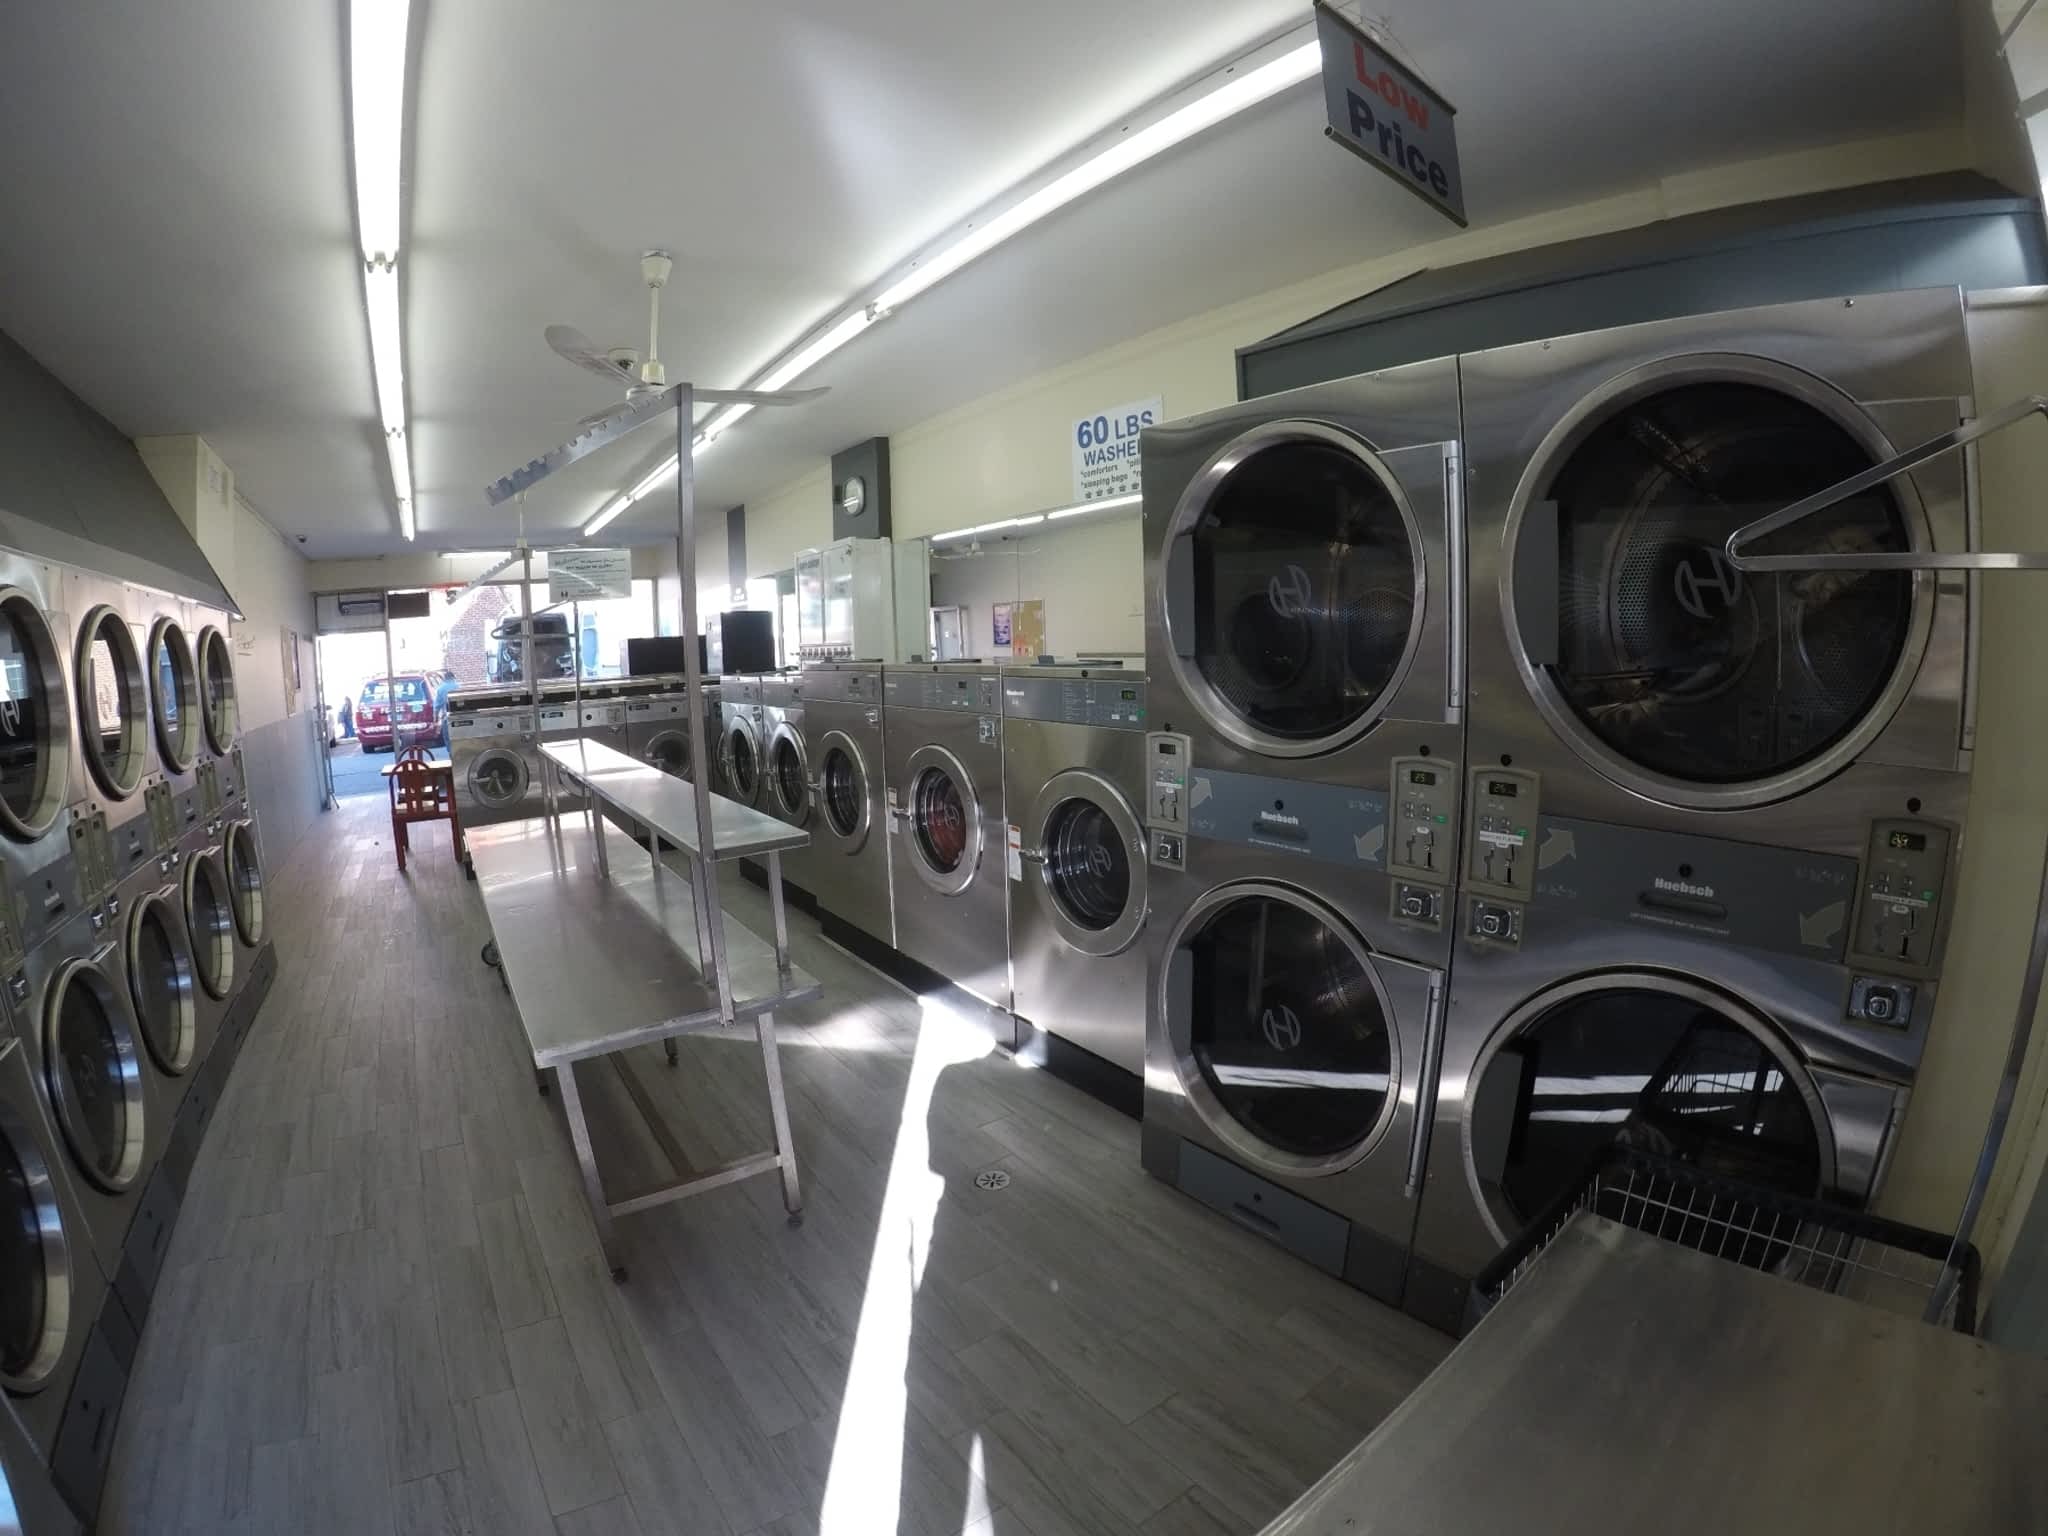 24 hour laundromat union city nj